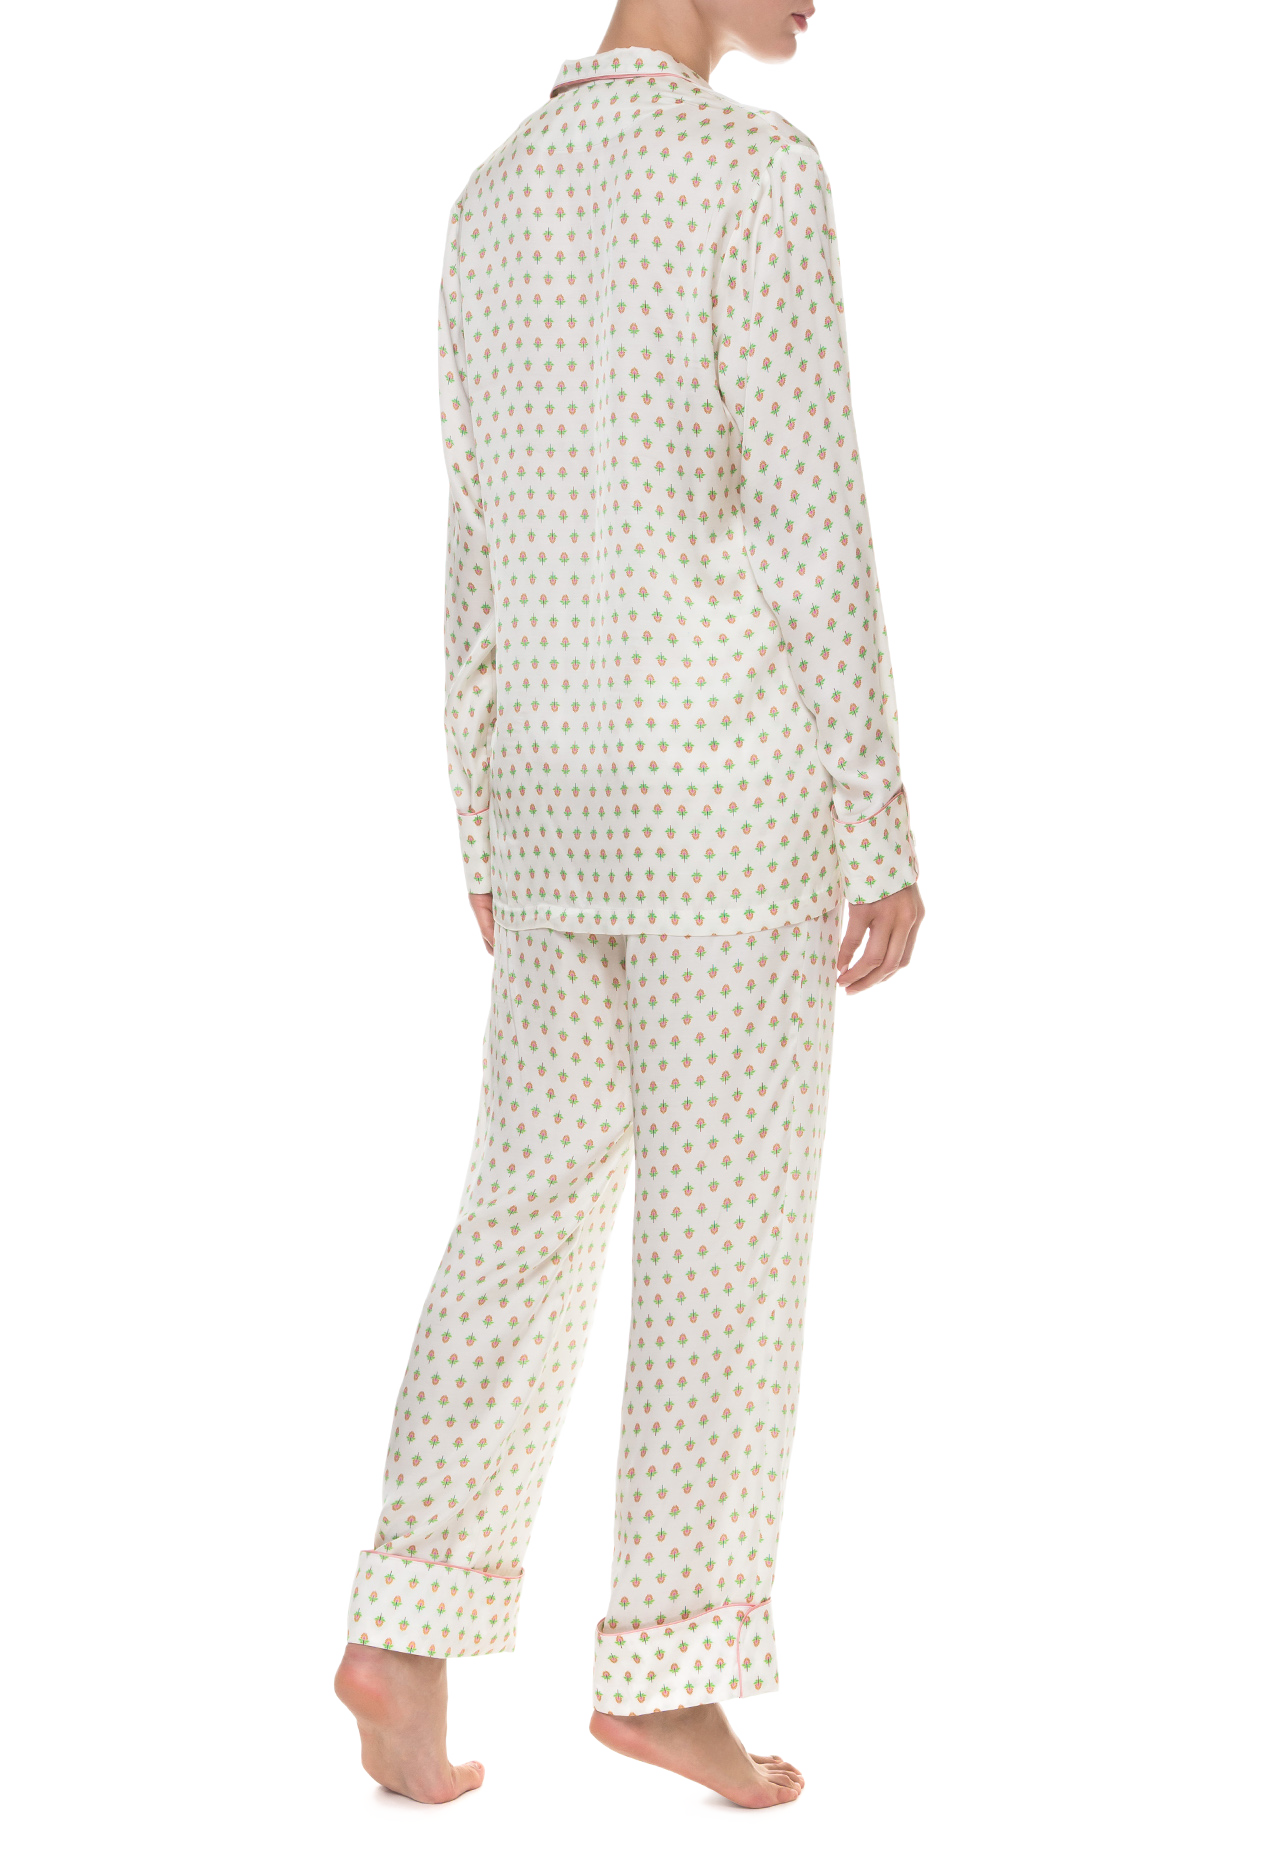 Пижамный костюм с штанами Suavite-SLP237-SV-MW-Grace-W